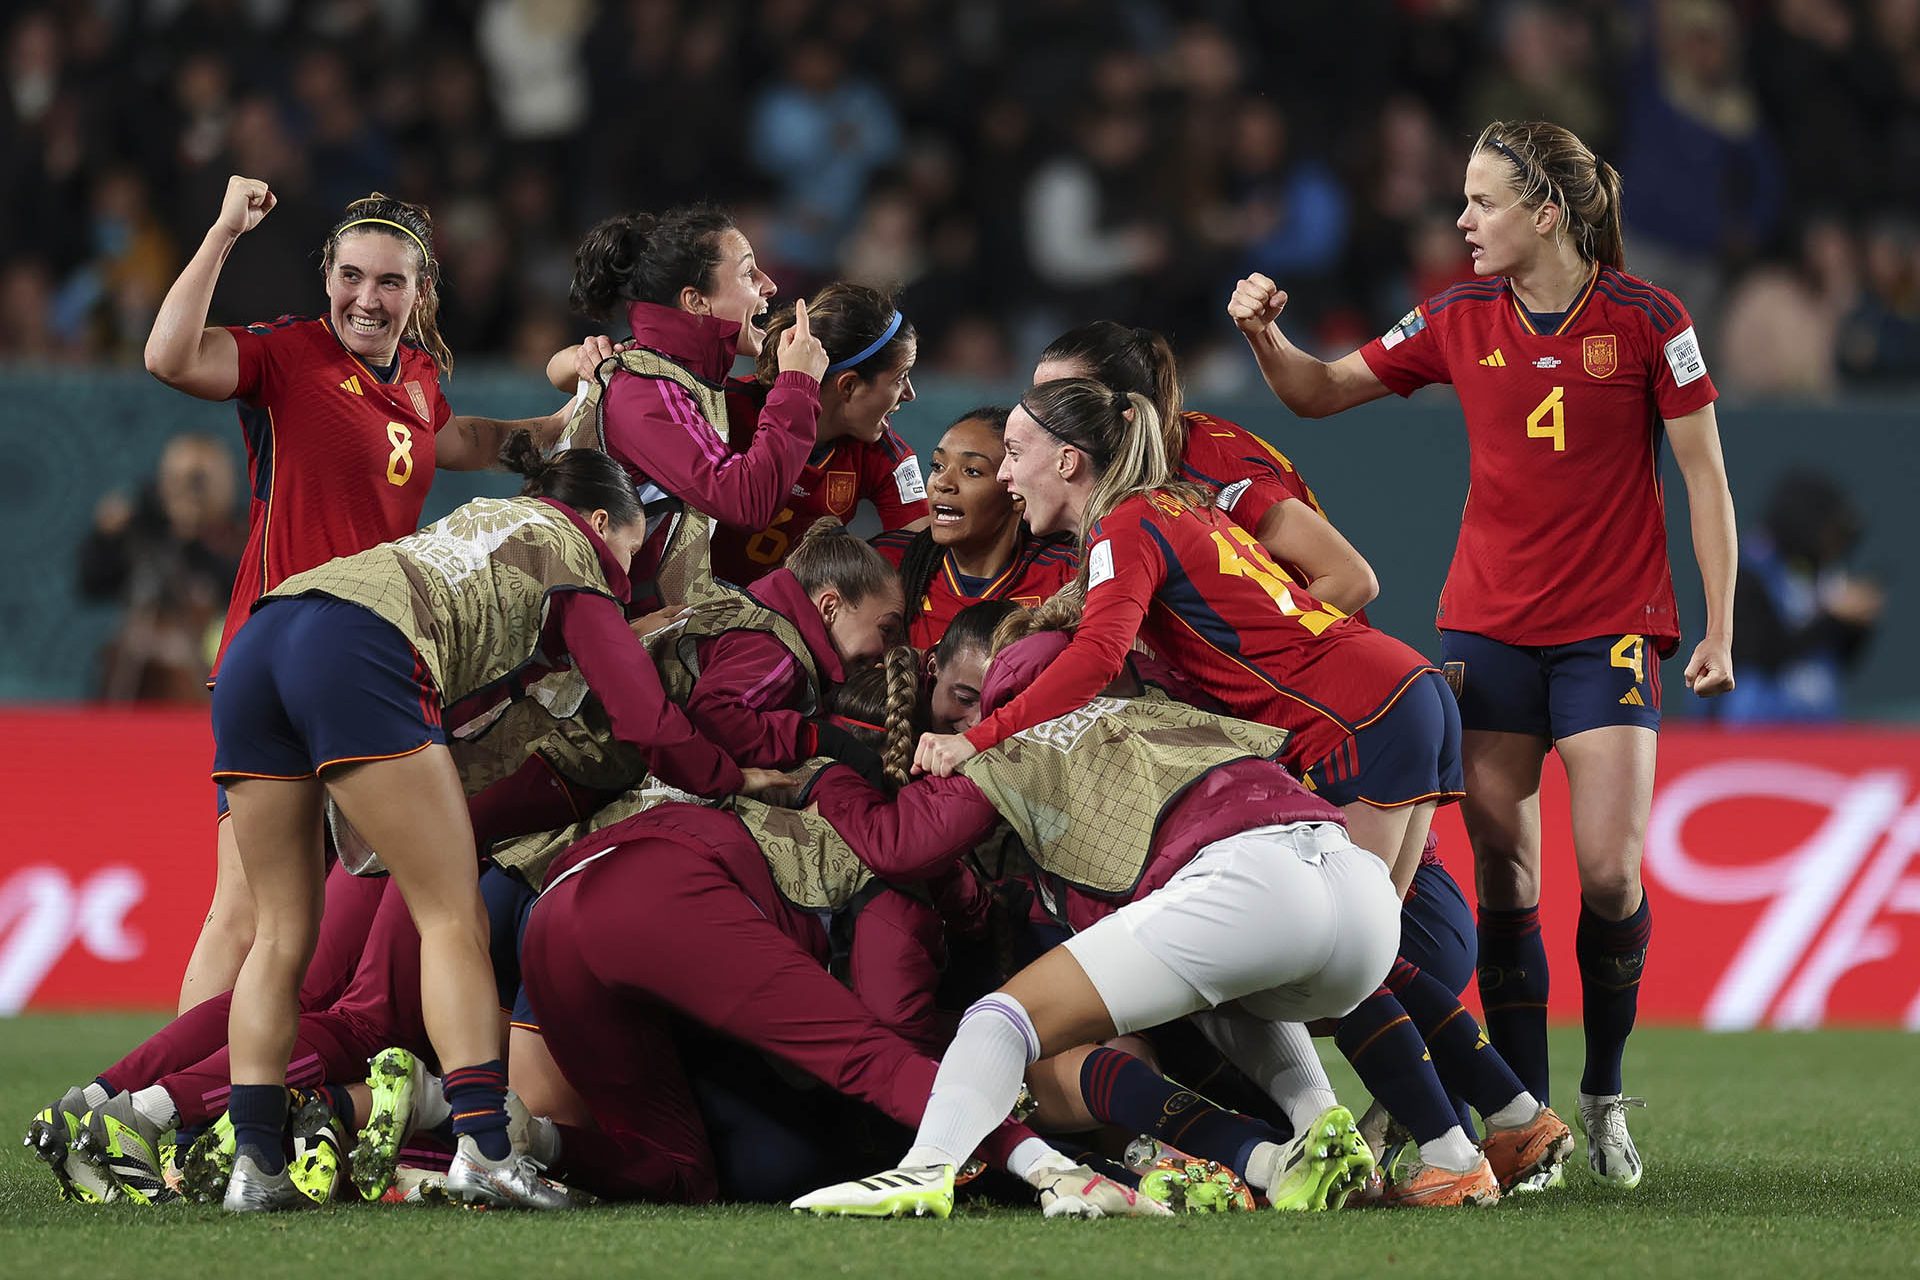 España vs Inglaterra, ¿cuál es la favorita para ganar el Mundial Femenino de Fútbol?